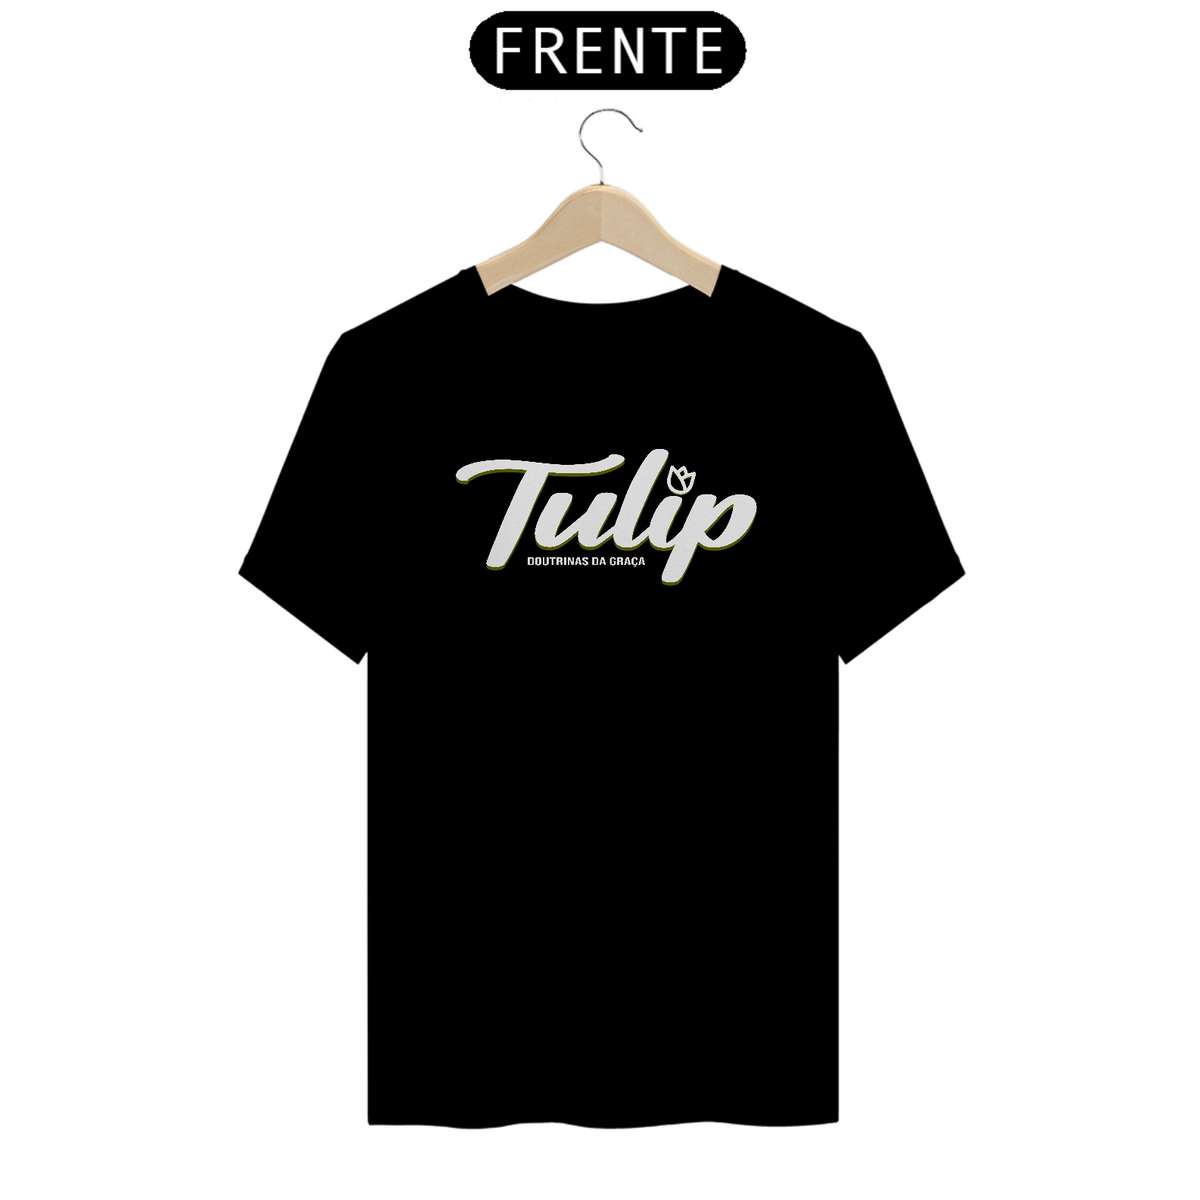 Nome do produto: Camiseta TULIP (cores escuras)